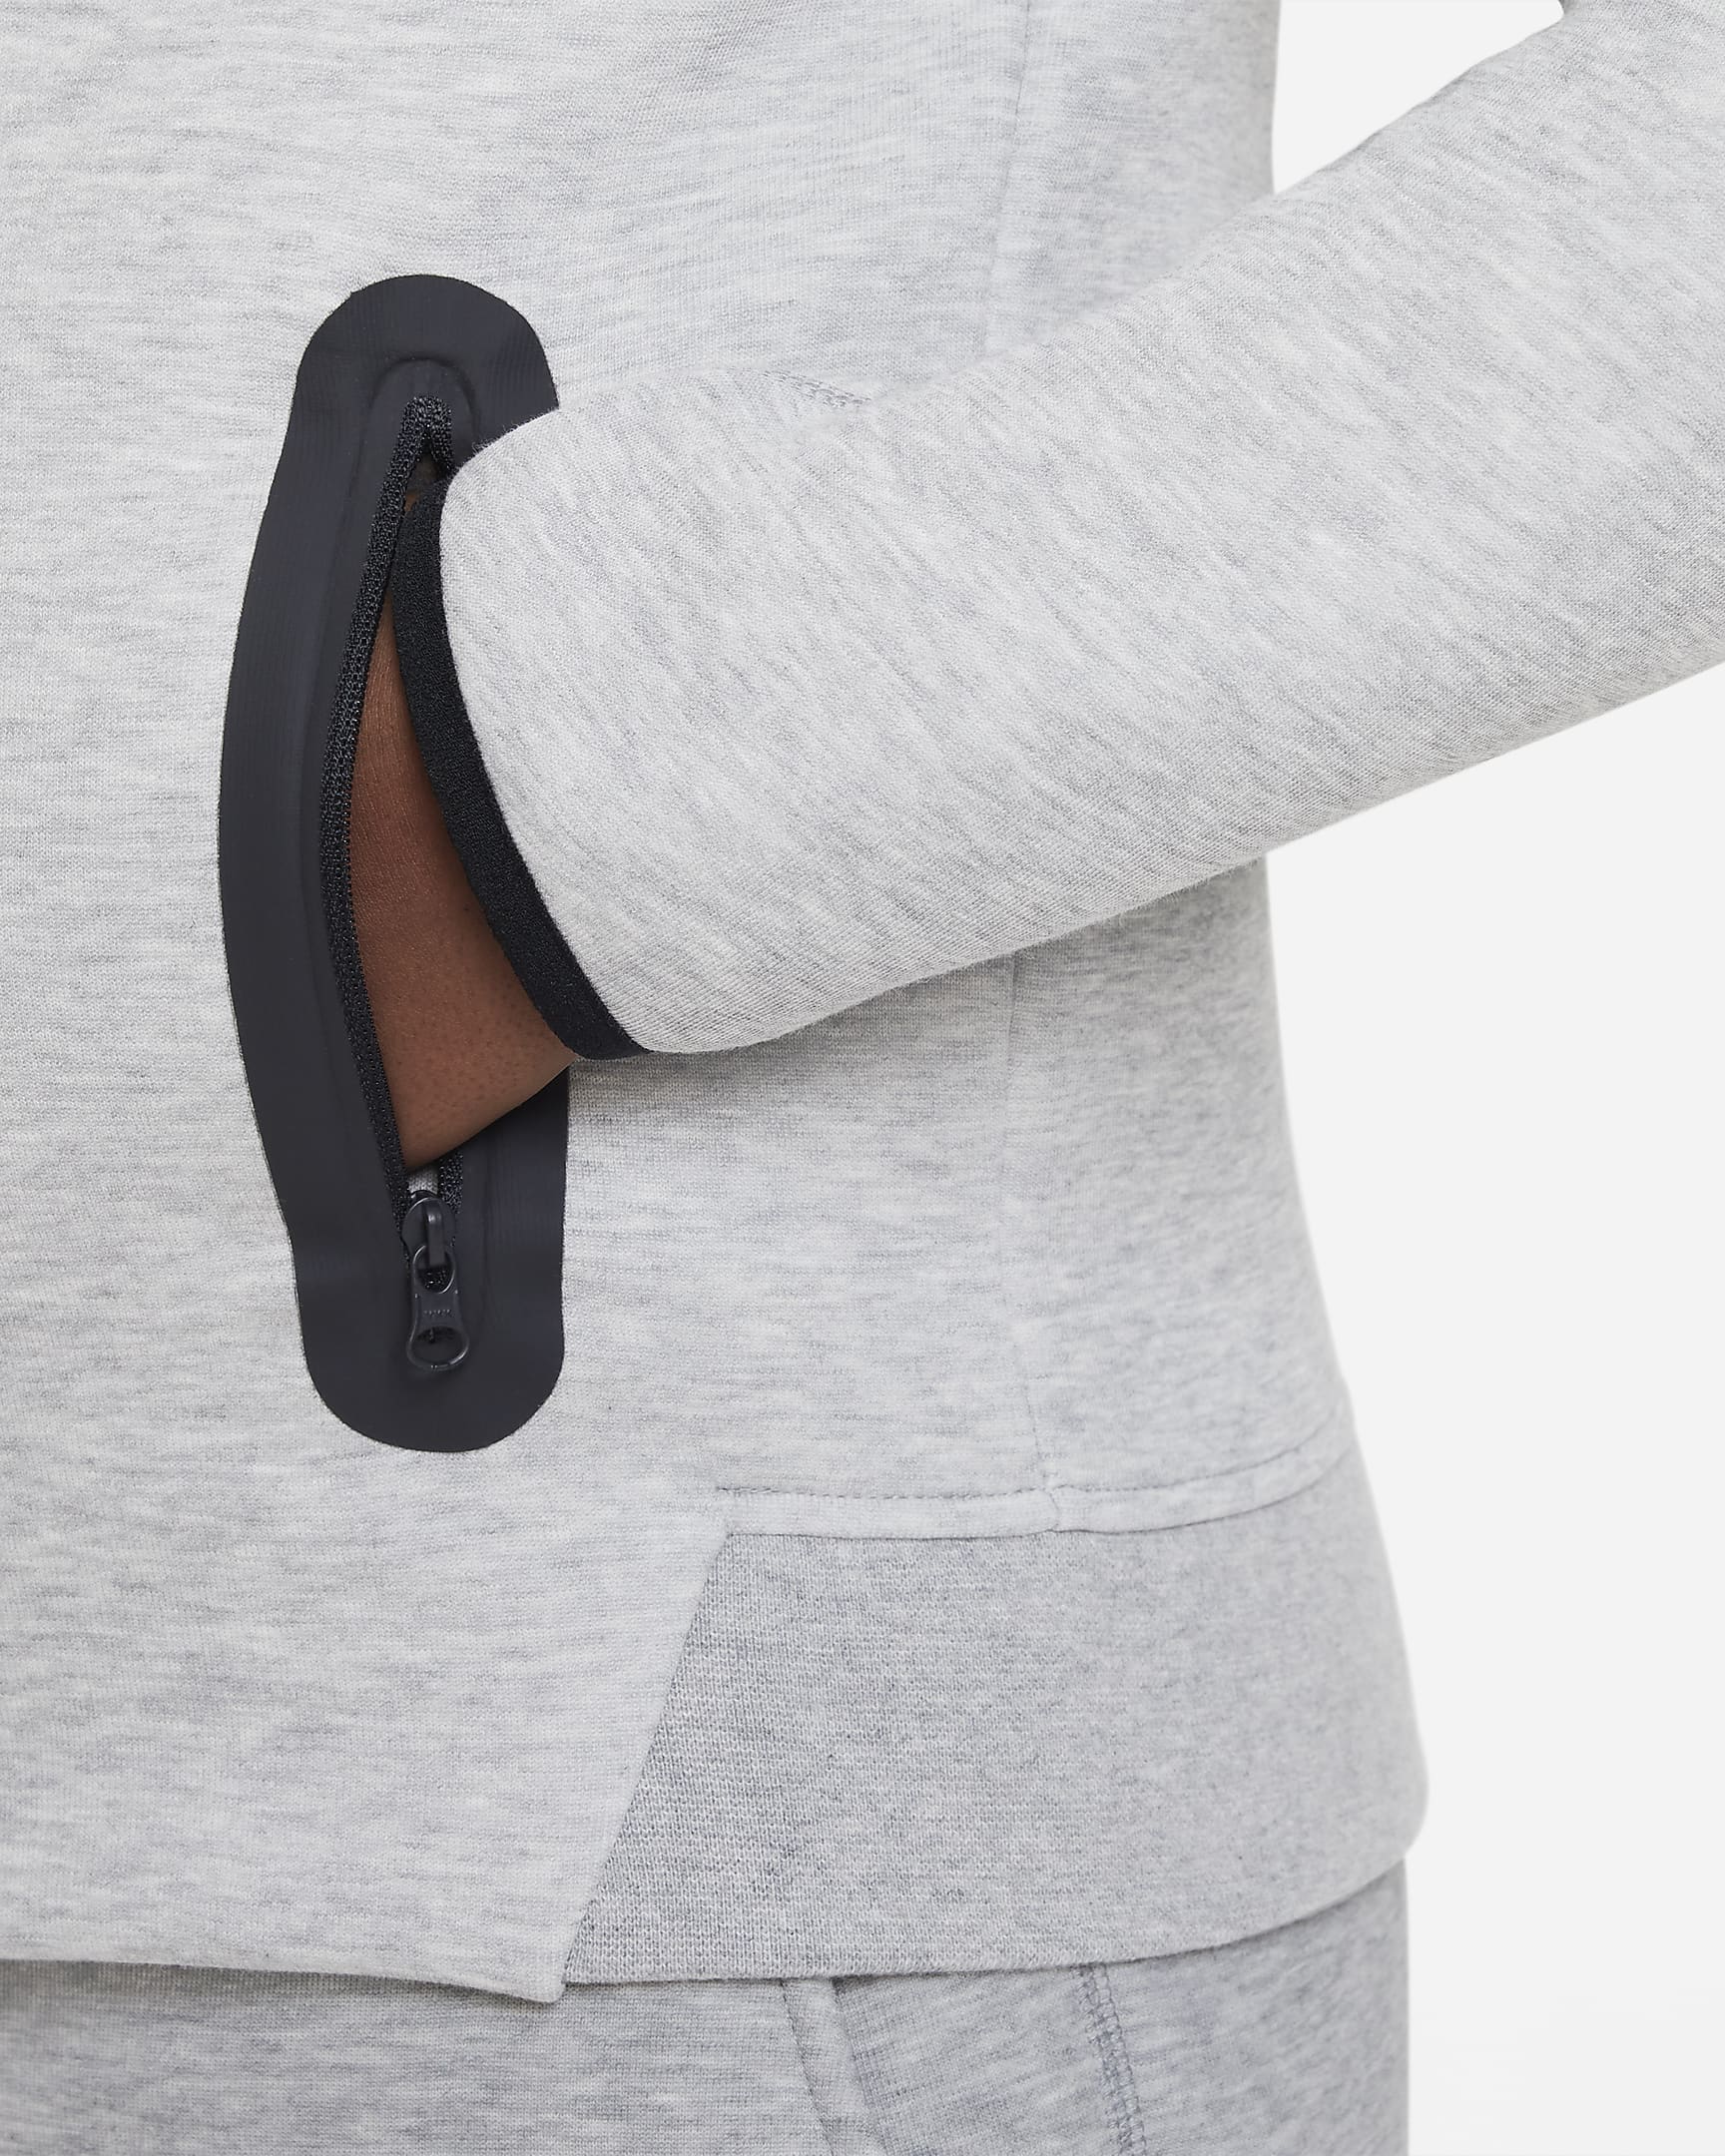 Nike Sportswear Tech Fleece Big Kids' (Boys') Full-Zip Hoodie (Extended ...